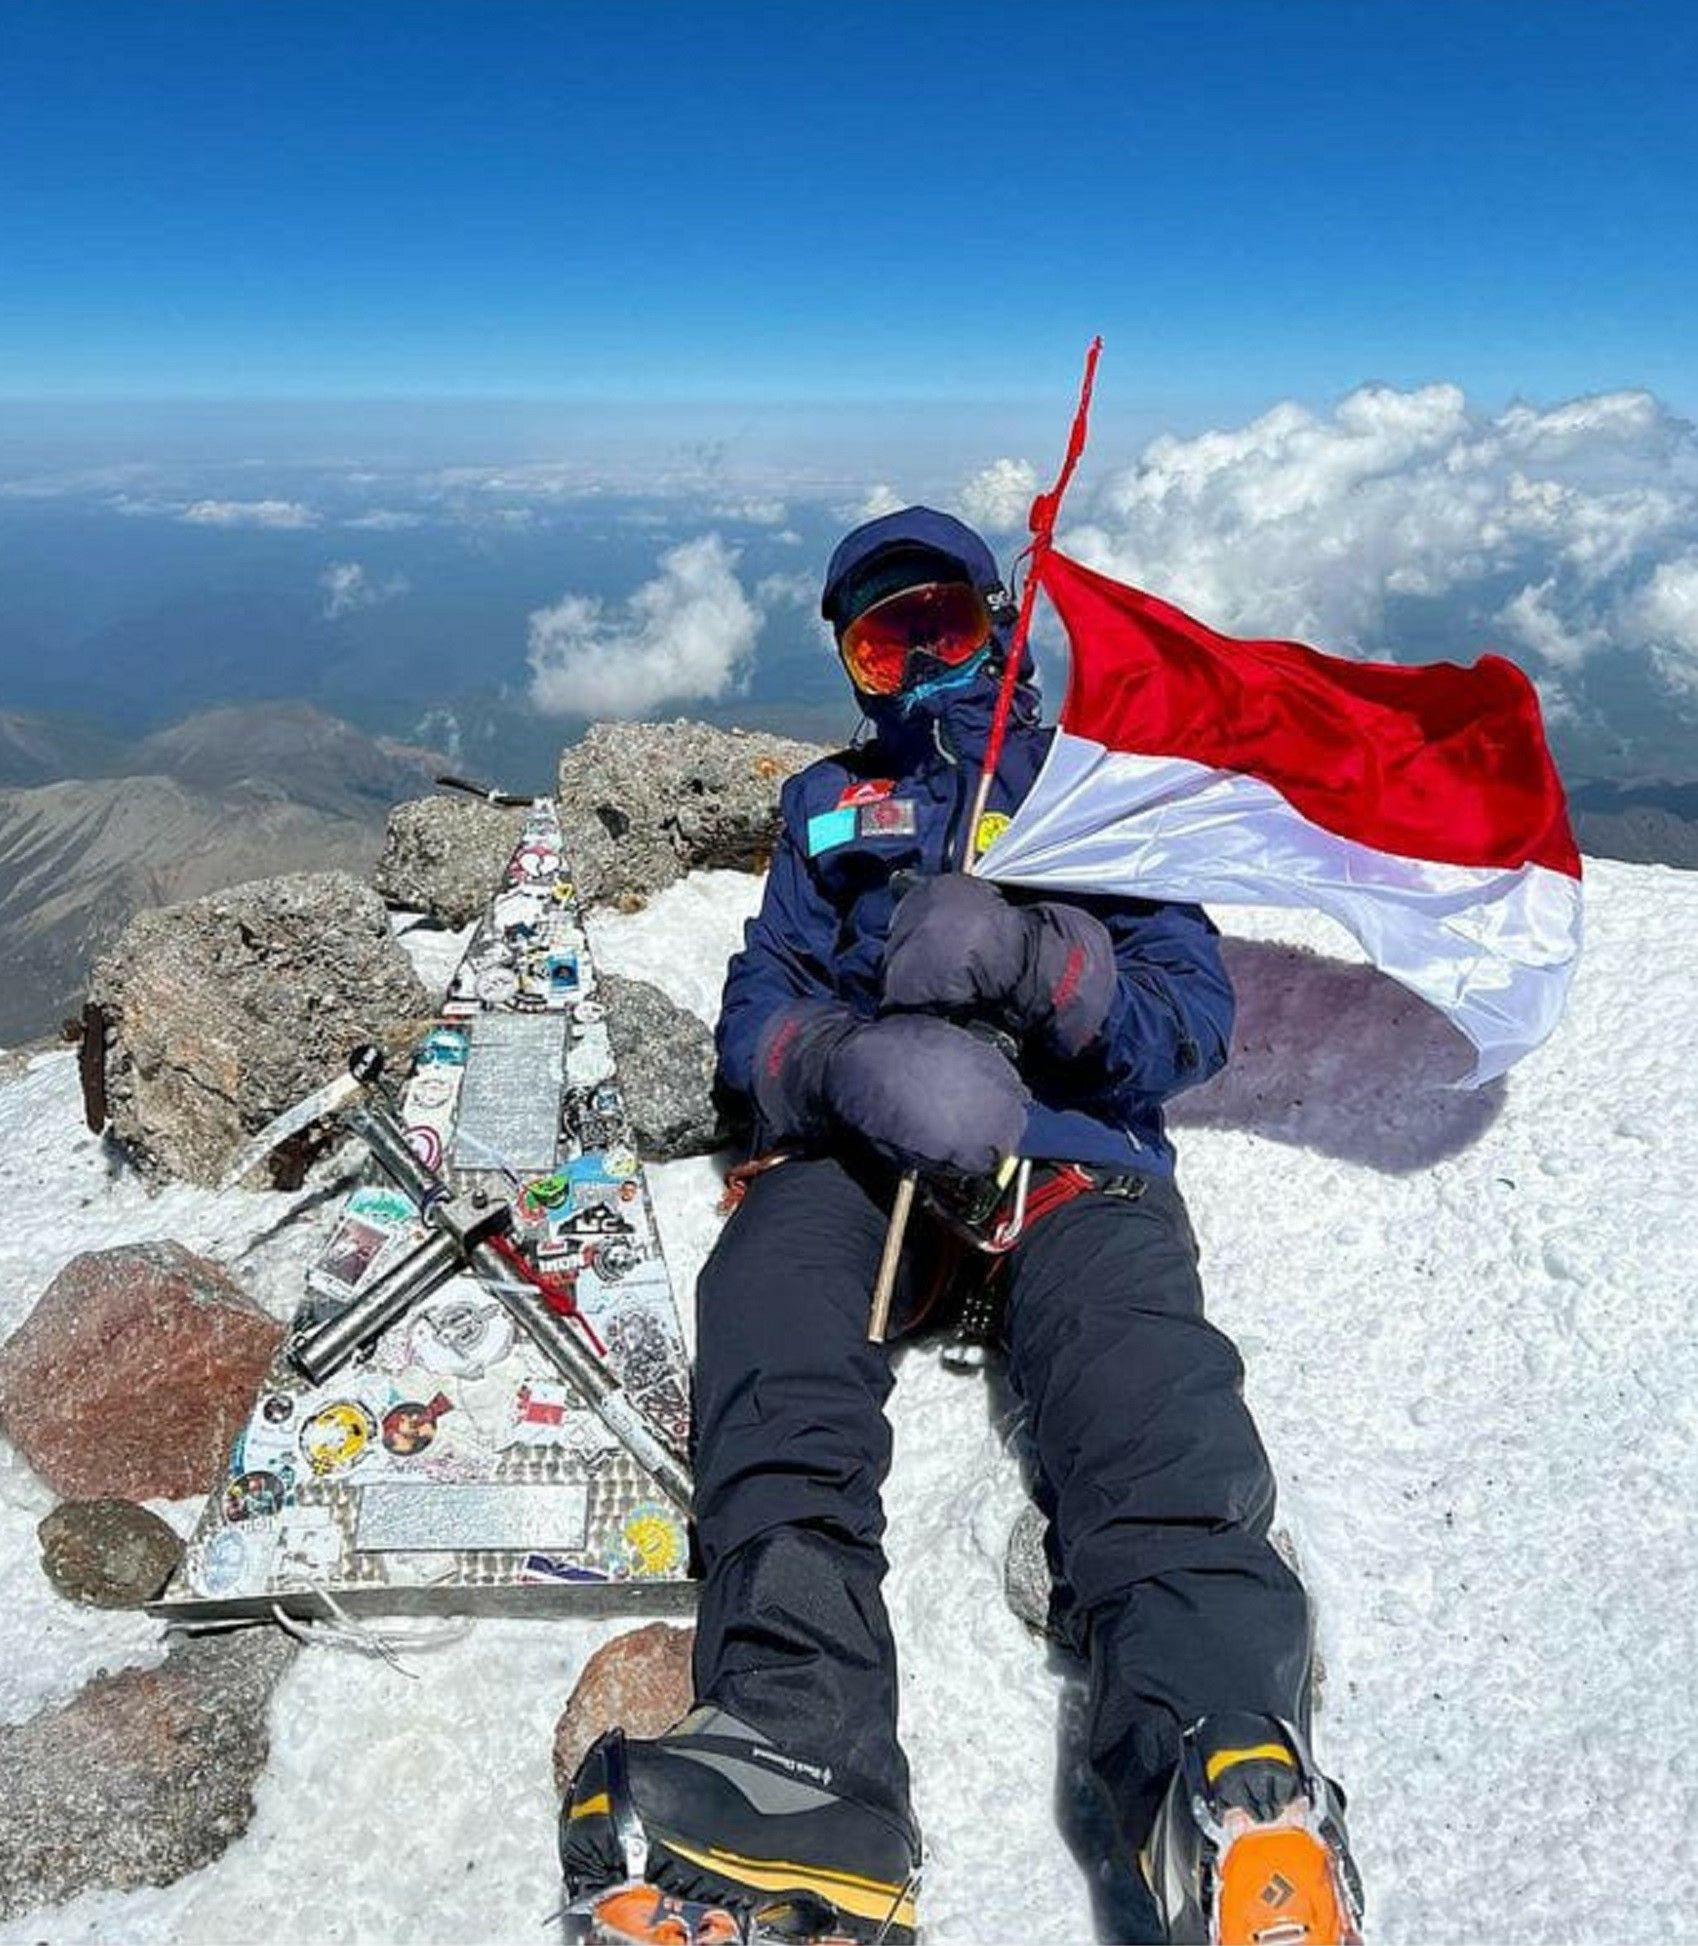 Khansa Syahla Aliyah basa ngélébétkeun bandéra Merah di Ponclot Gunung Elbrus, Rusia, 17 Agustus 2022.*